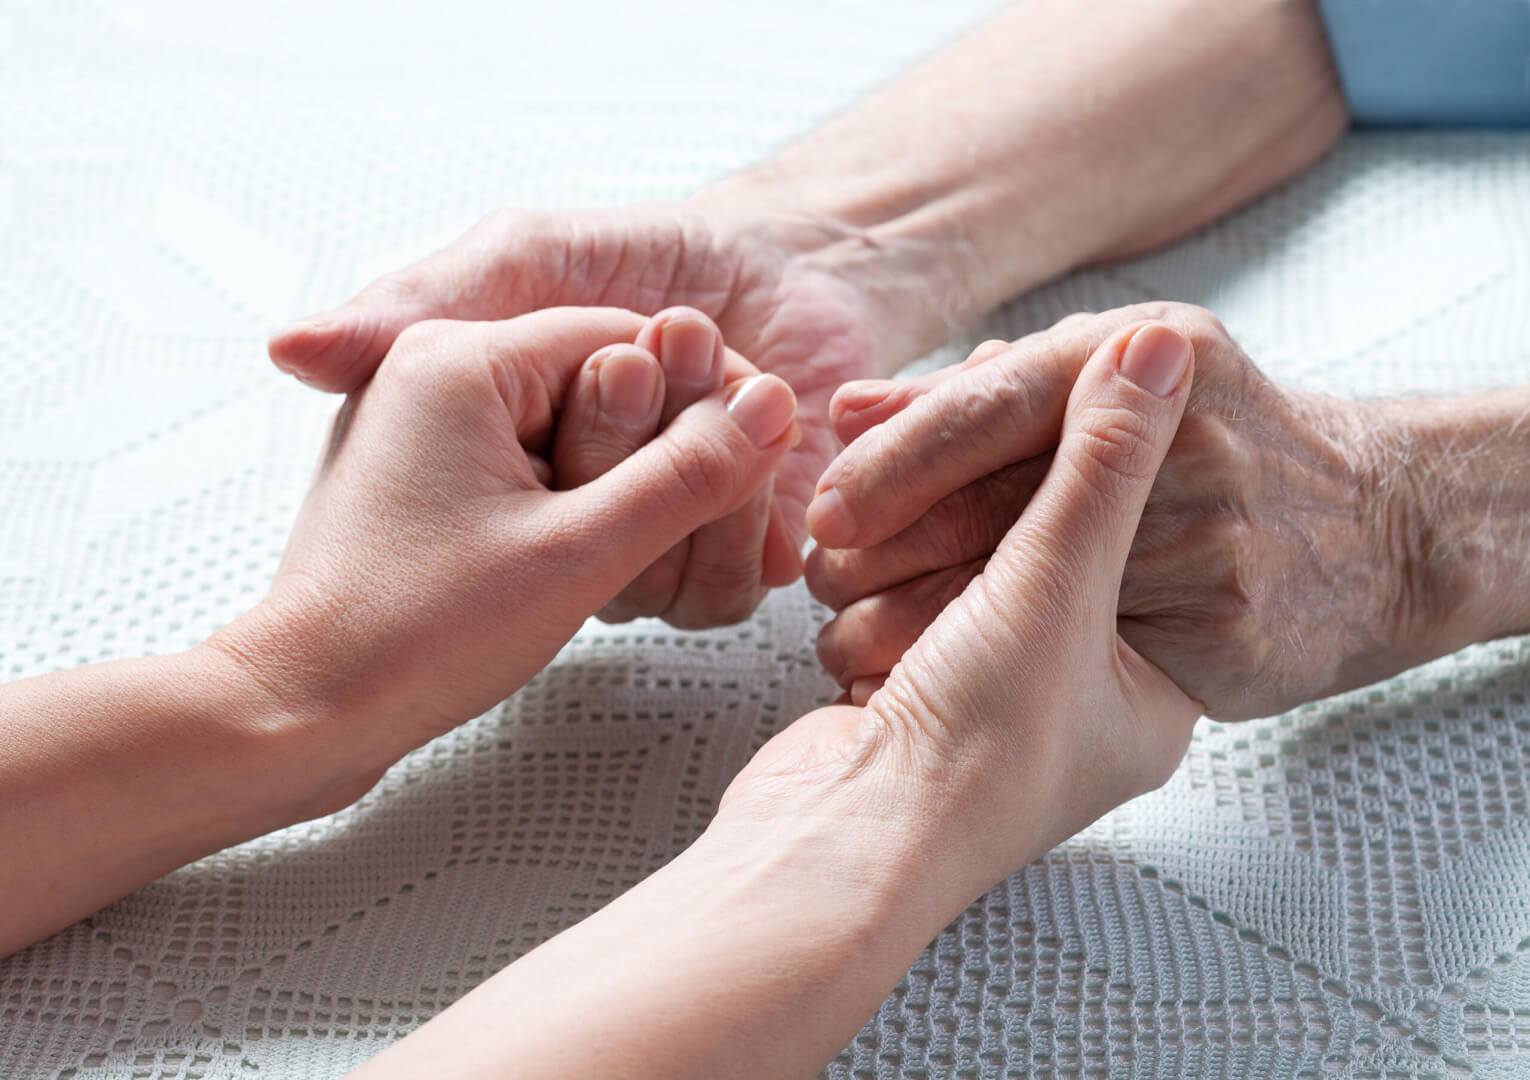 Un plano detalle de unas manos de una persona anciana agarrando unas manos de una persona joven.